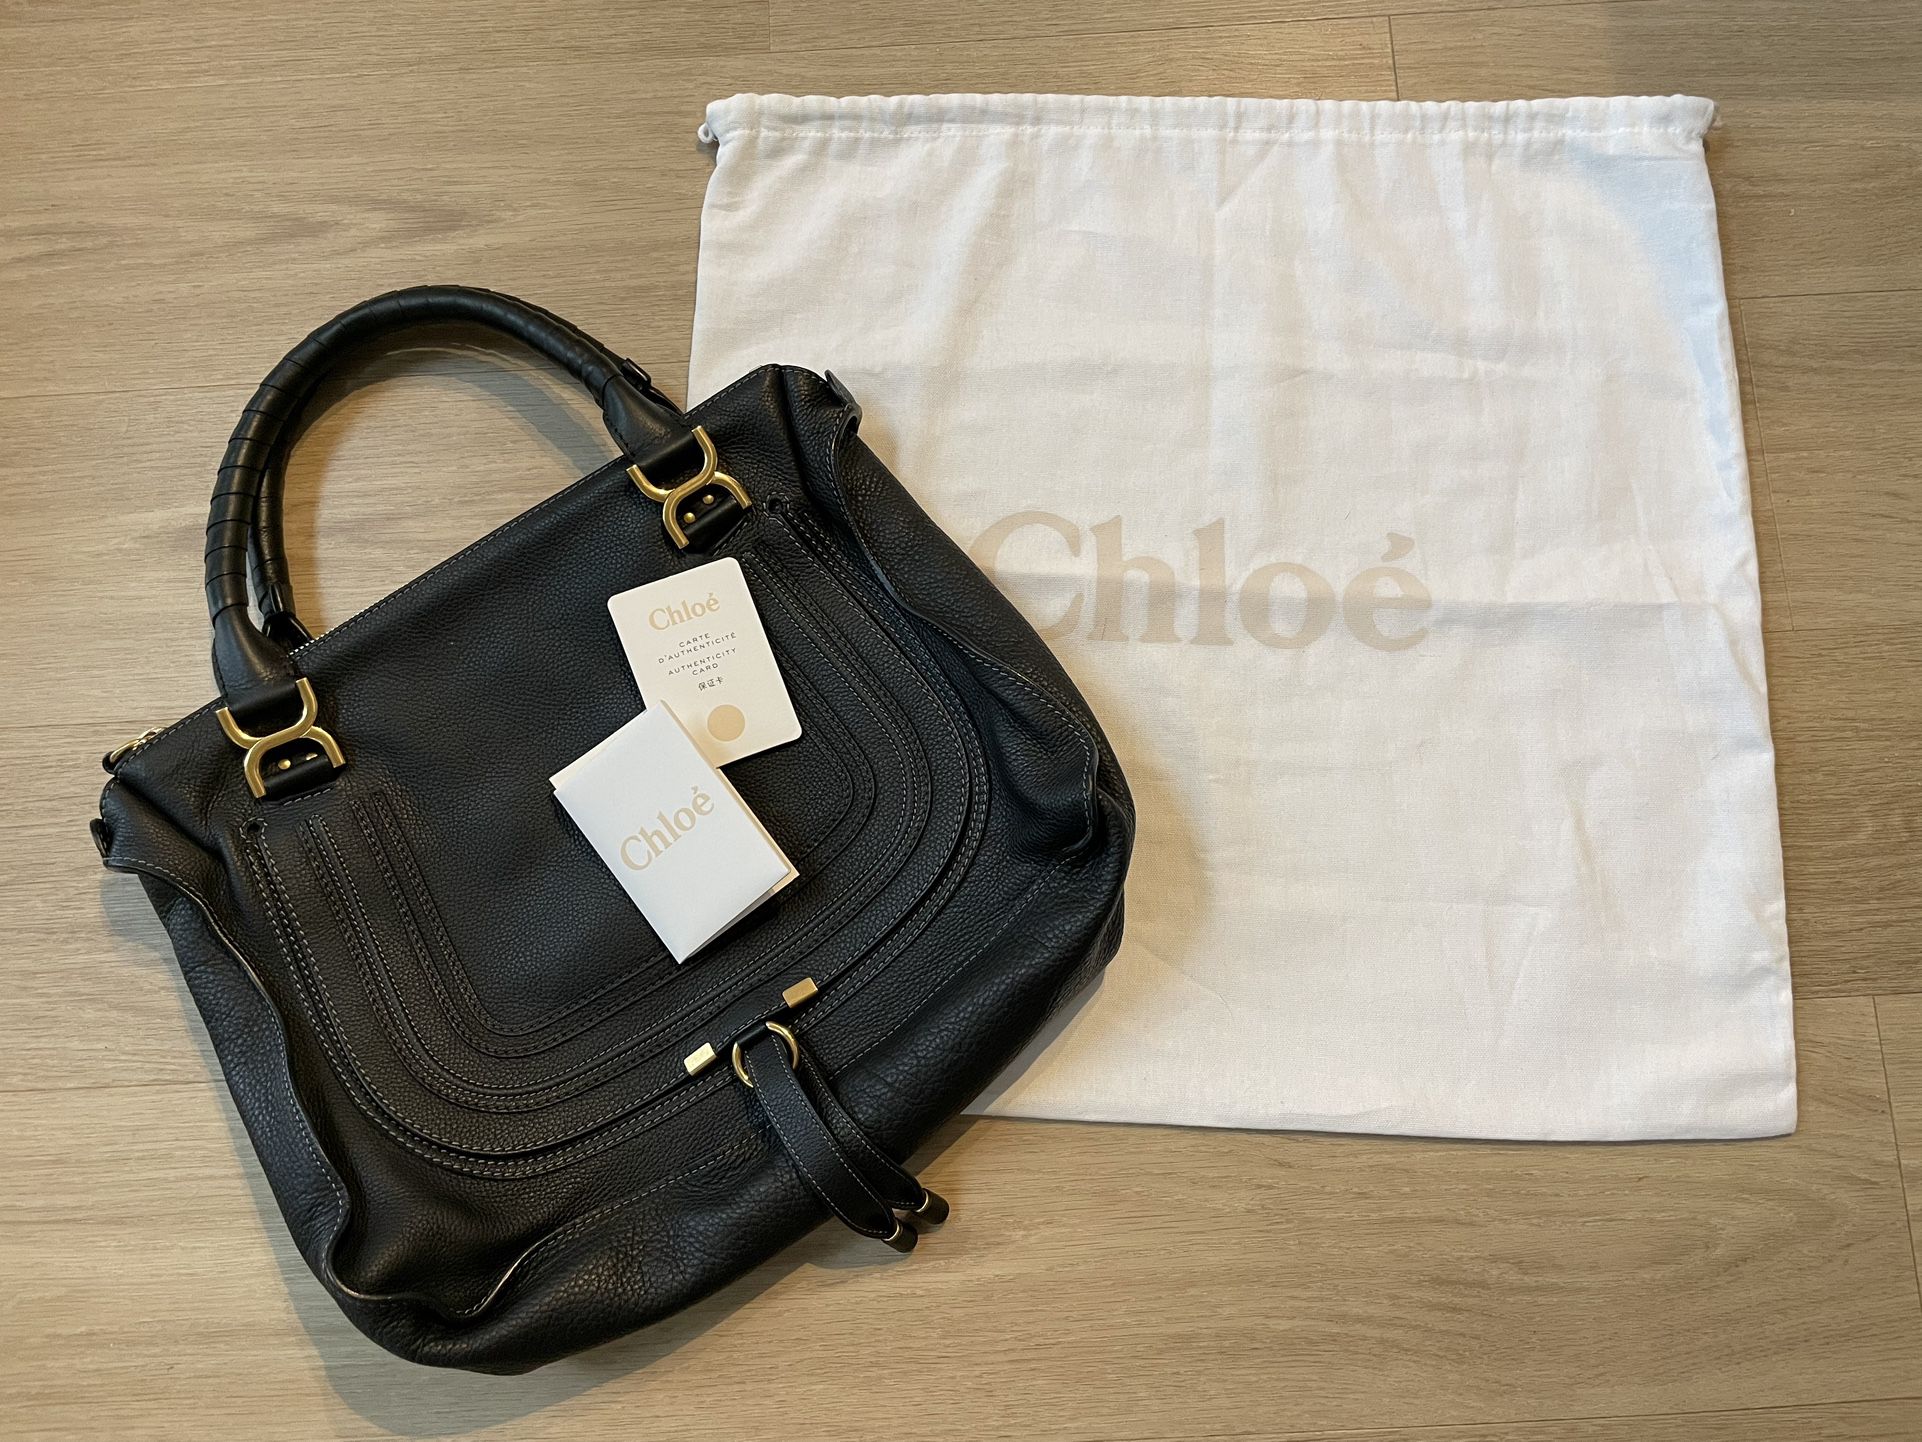 Designer Chloe Large Marcie Purse/Shoulder-handbag